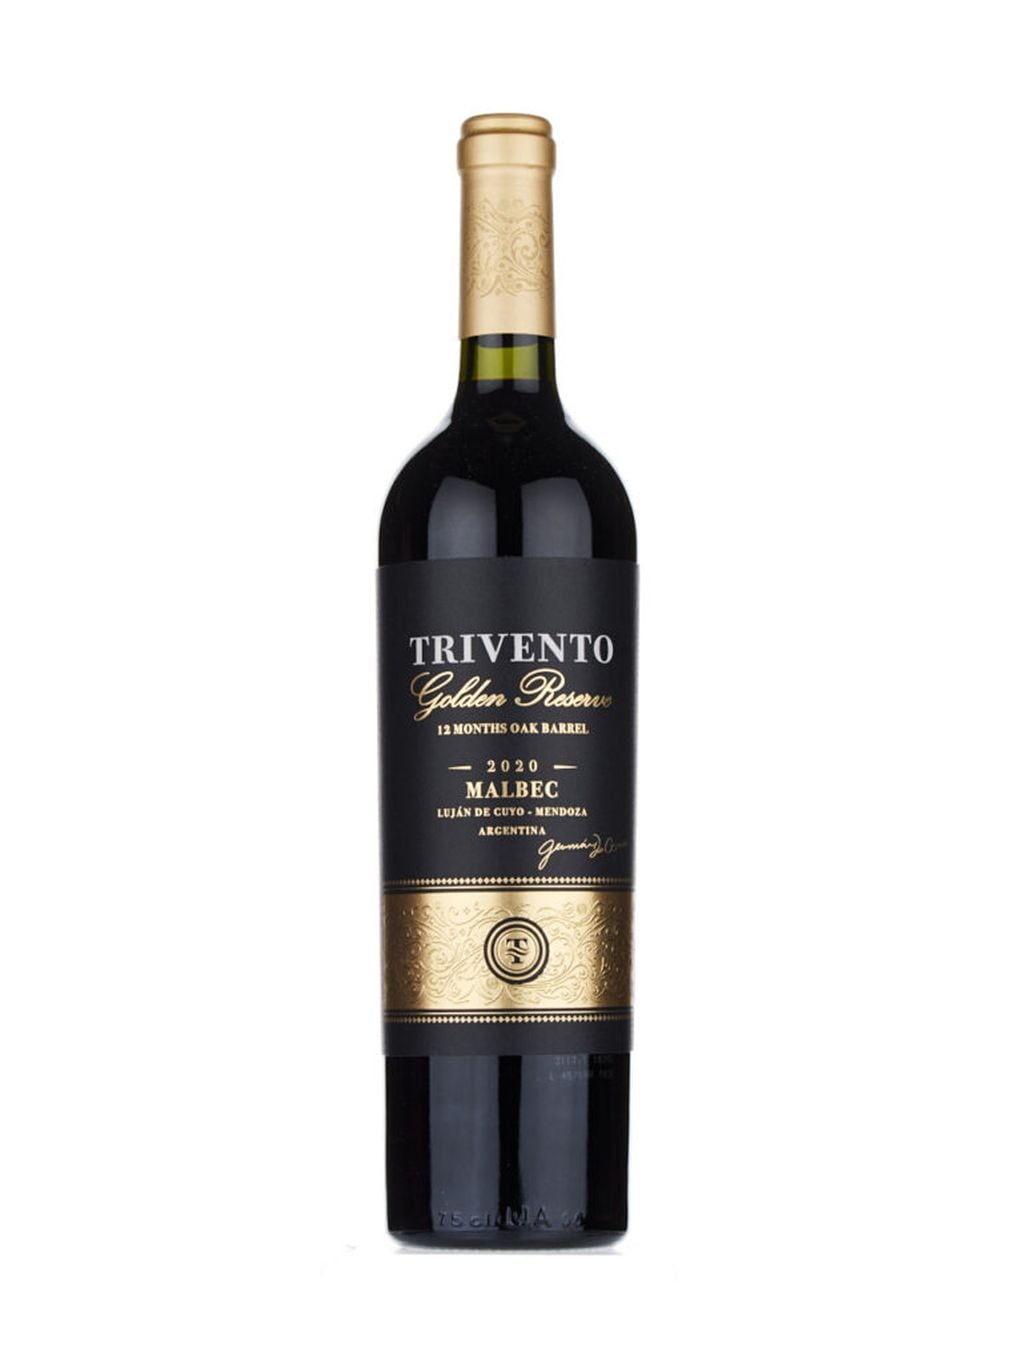 Trivento Golden Reserve Malbec 2020 fue nuevamente el mejor vino de Argentina. - Gentileza